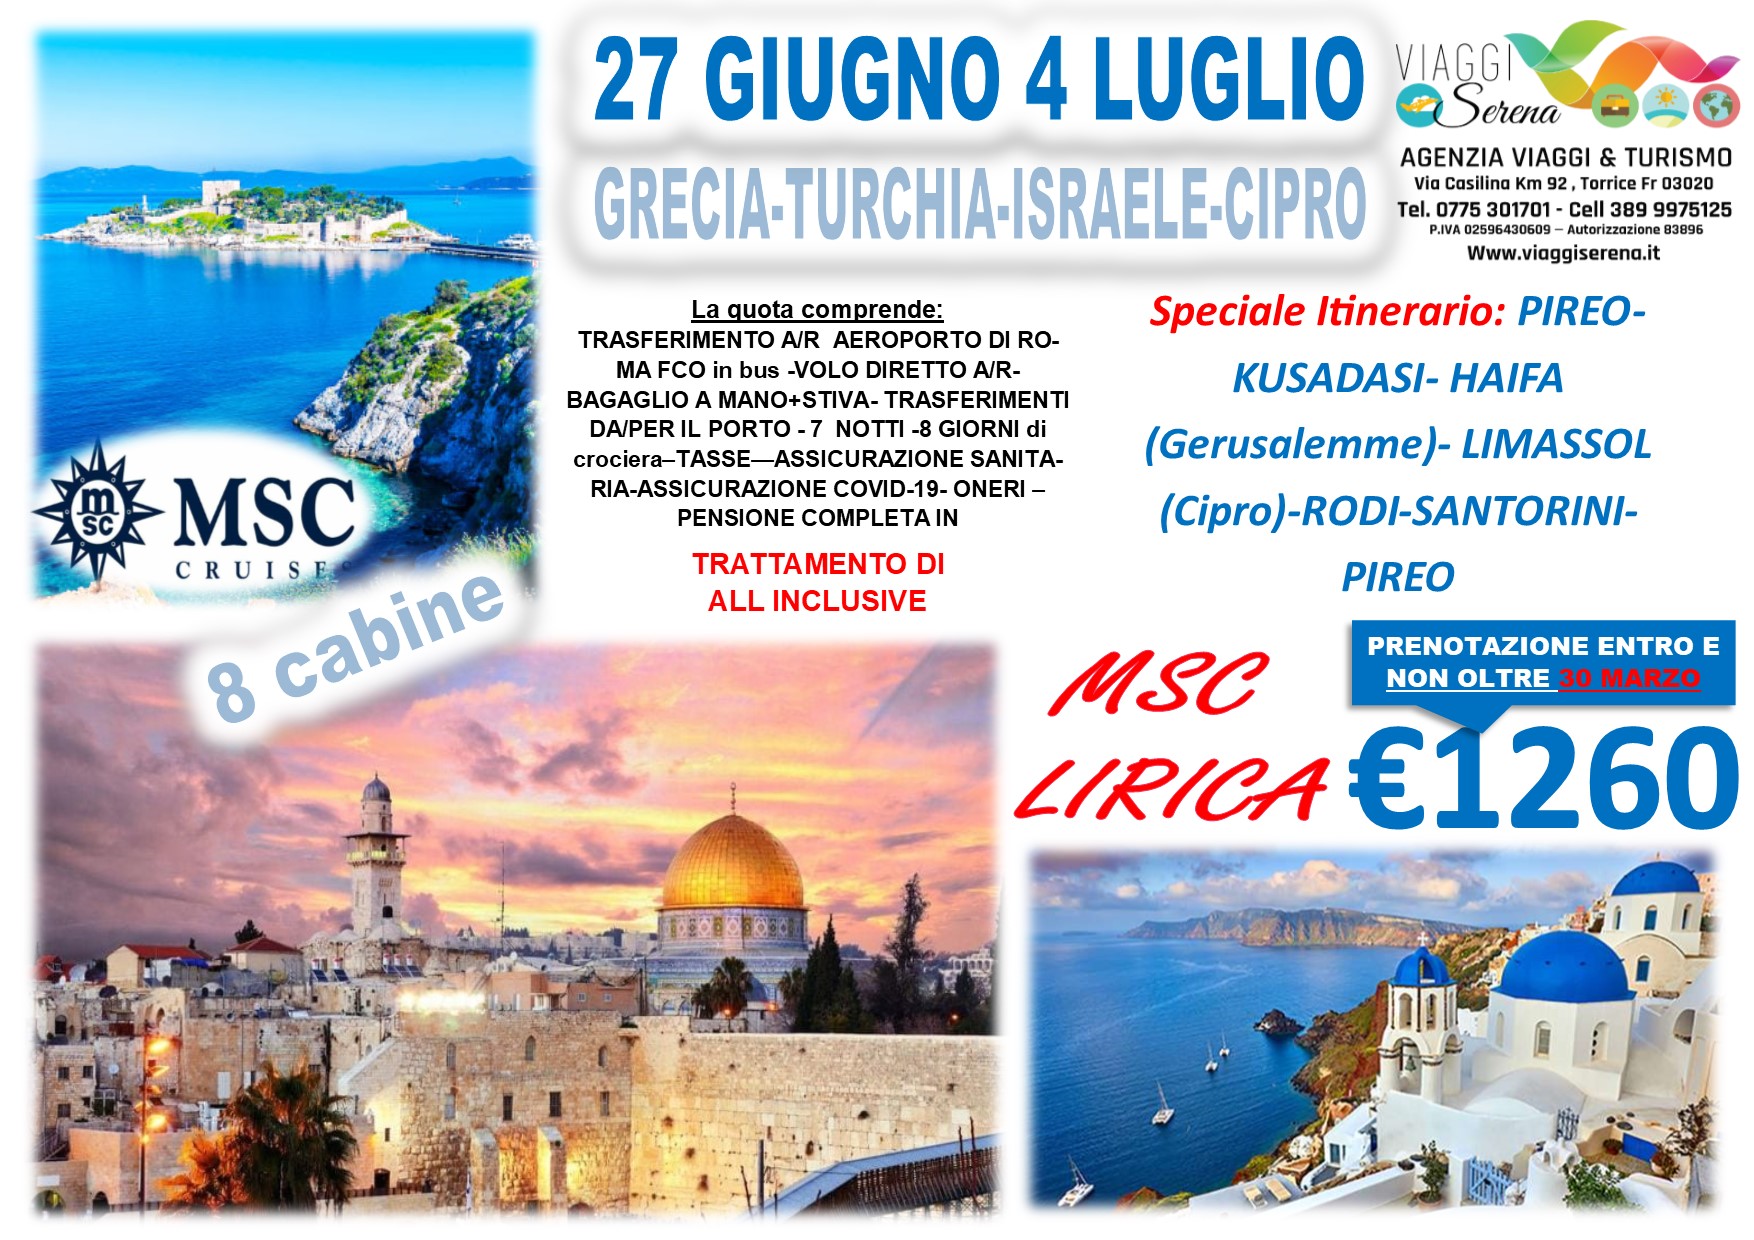 Viaggi di Gruppo: Crociera Grecia, Turchia, Israele & Cipro 27 Giugno-4 Luglio €1260,00